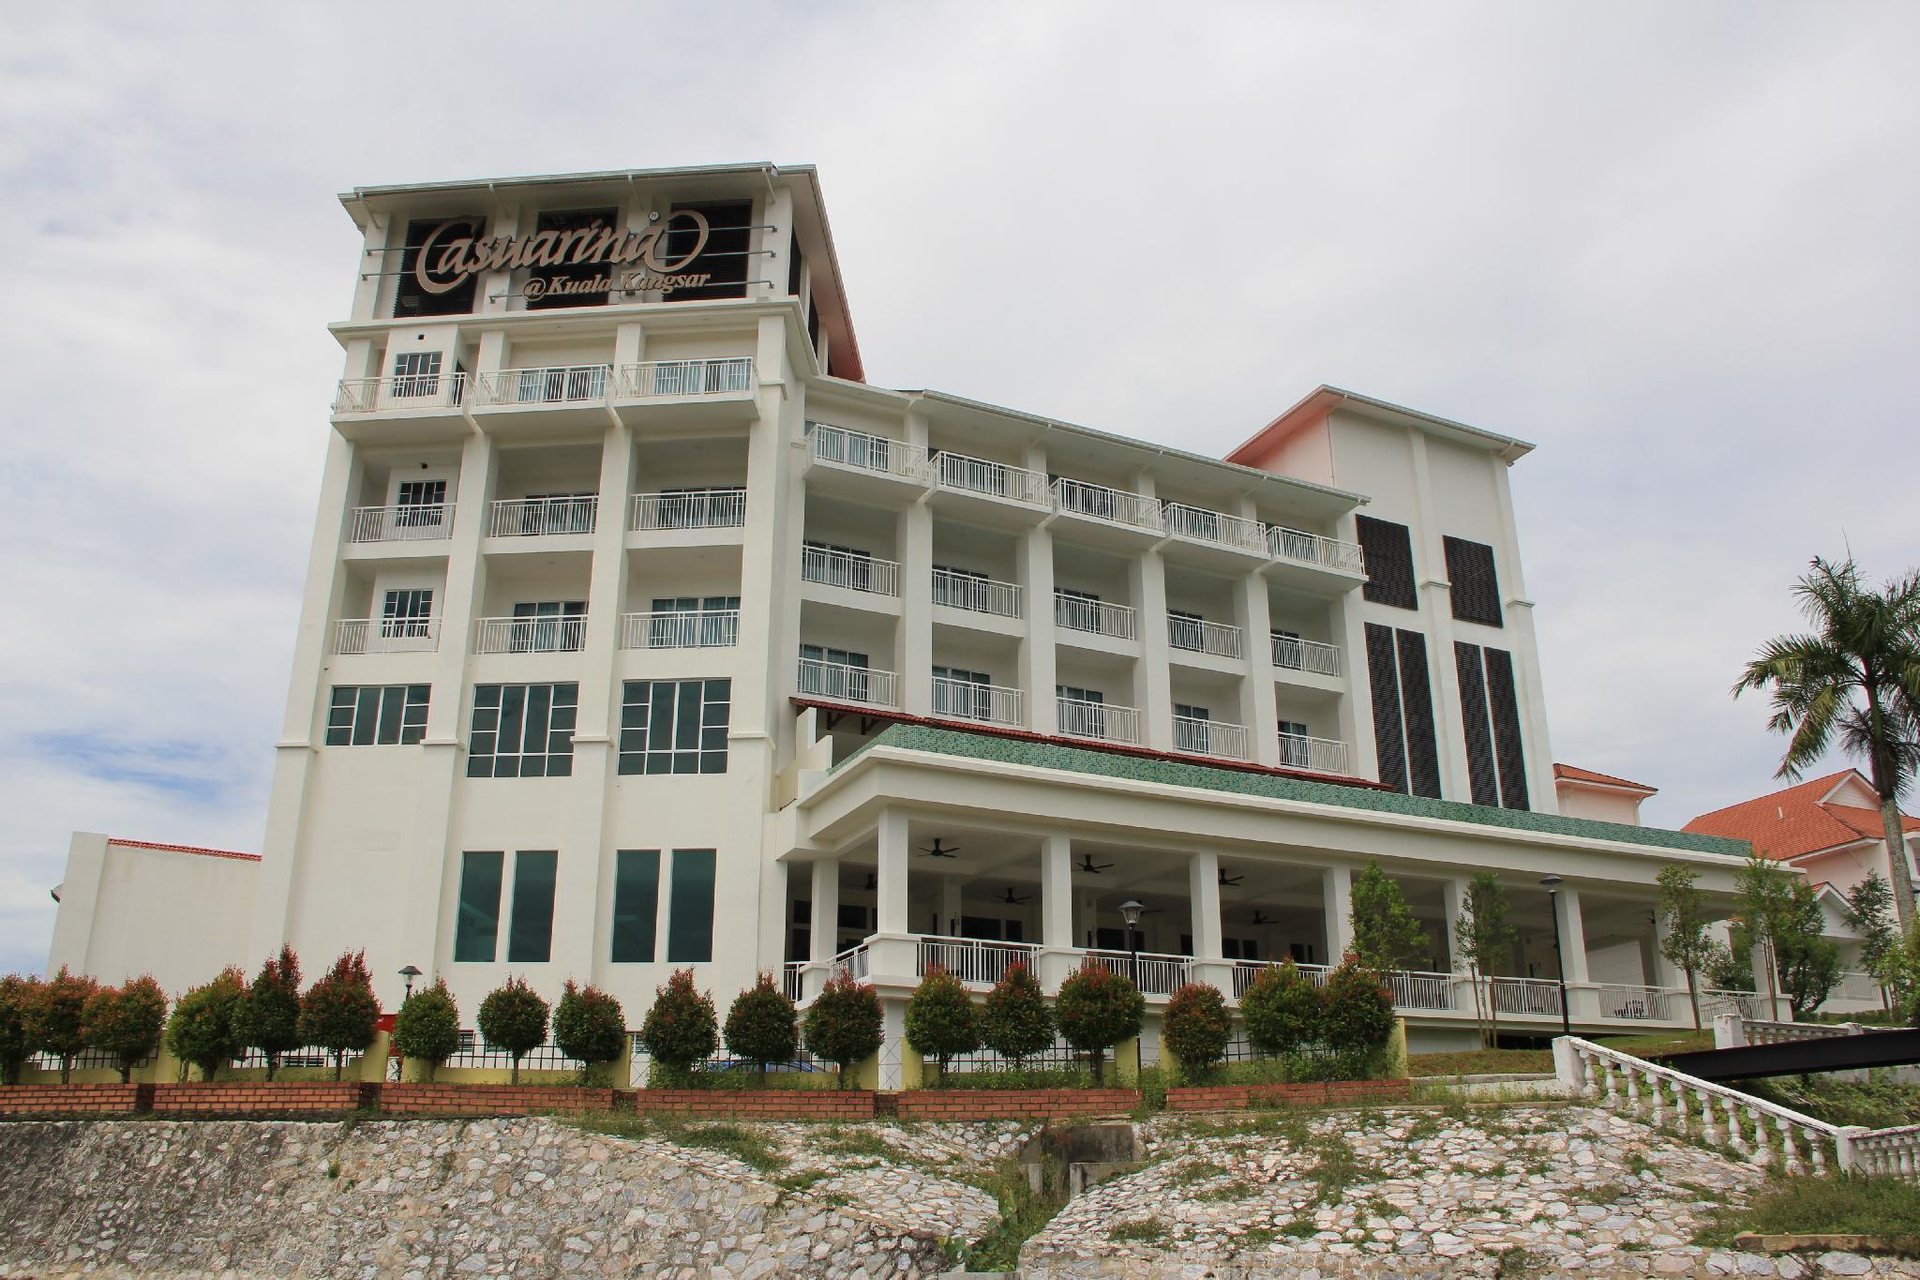 Hotel Casuarina @ Kuala Kangsar , Kuala Kangsar